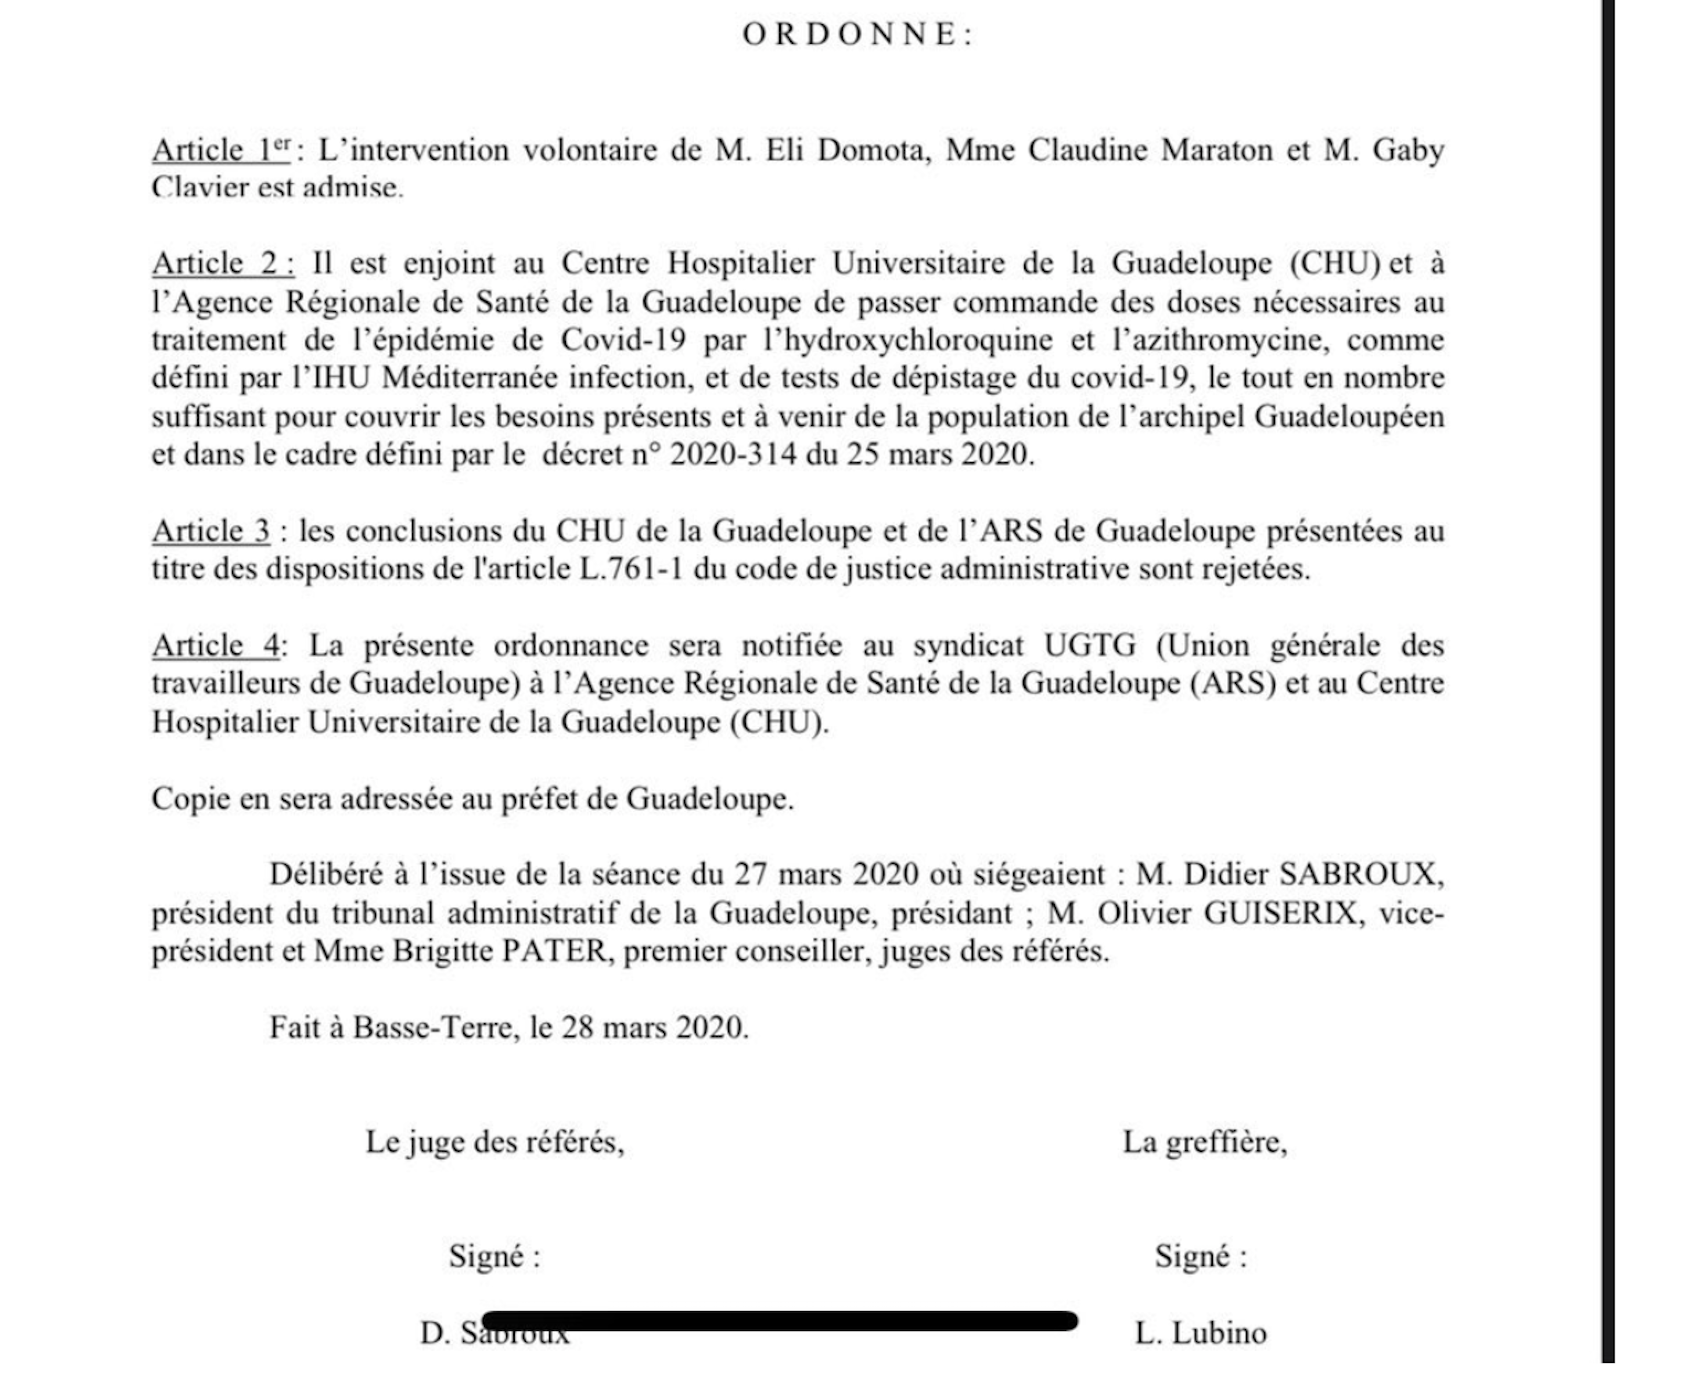 Enorme, le tribunal administratif de Guadeloupe oblige les médecins à donner de la chloroquine aux malades !